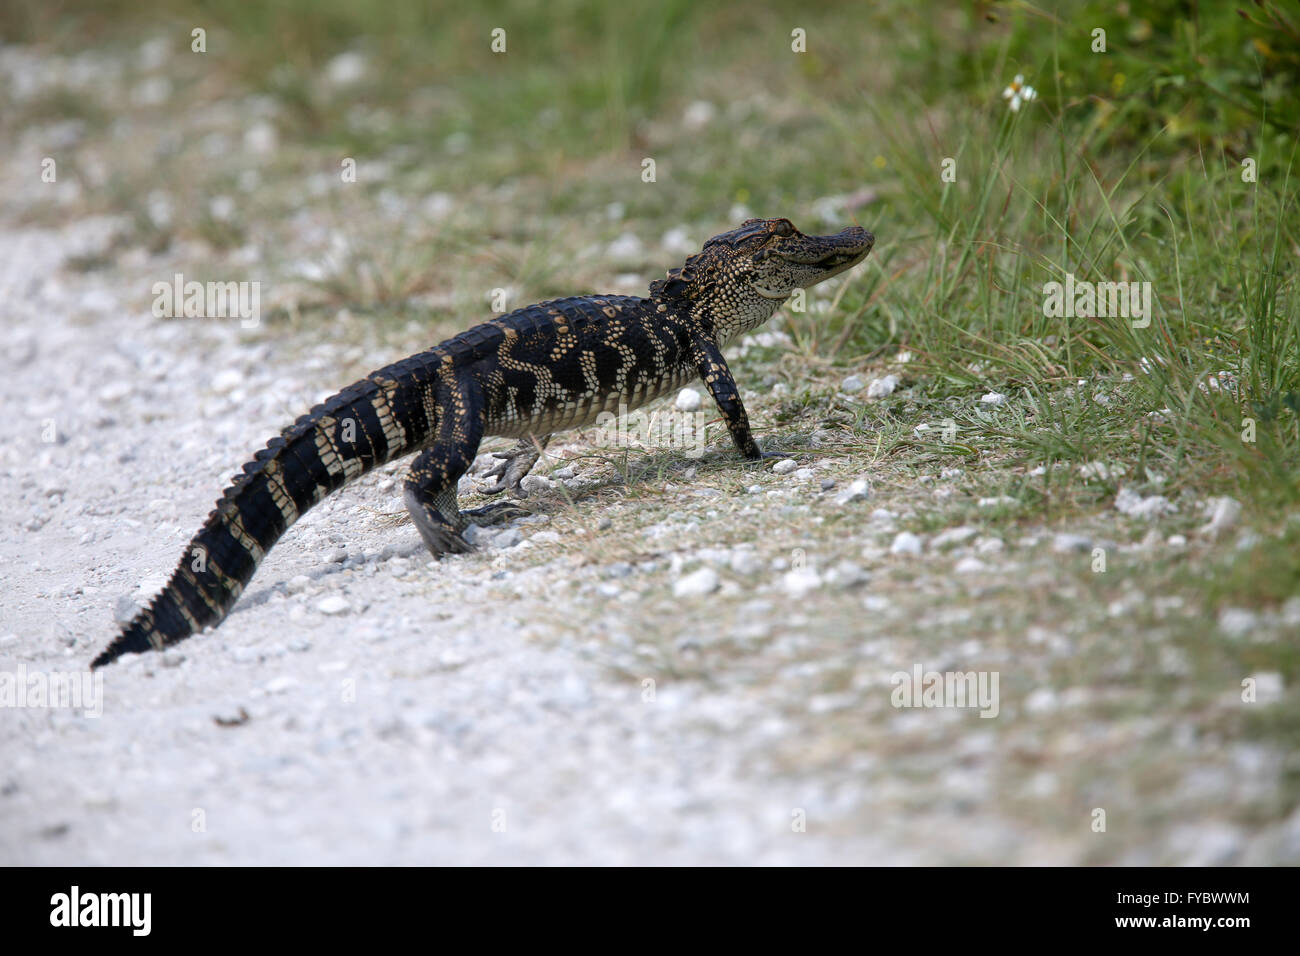 Los jóvenes alligator cruzando el sendero camino justo delante de mí! La twas aproximadamente 1,5 m o 5 pies de largo. De abril de 2016 Foto de stock